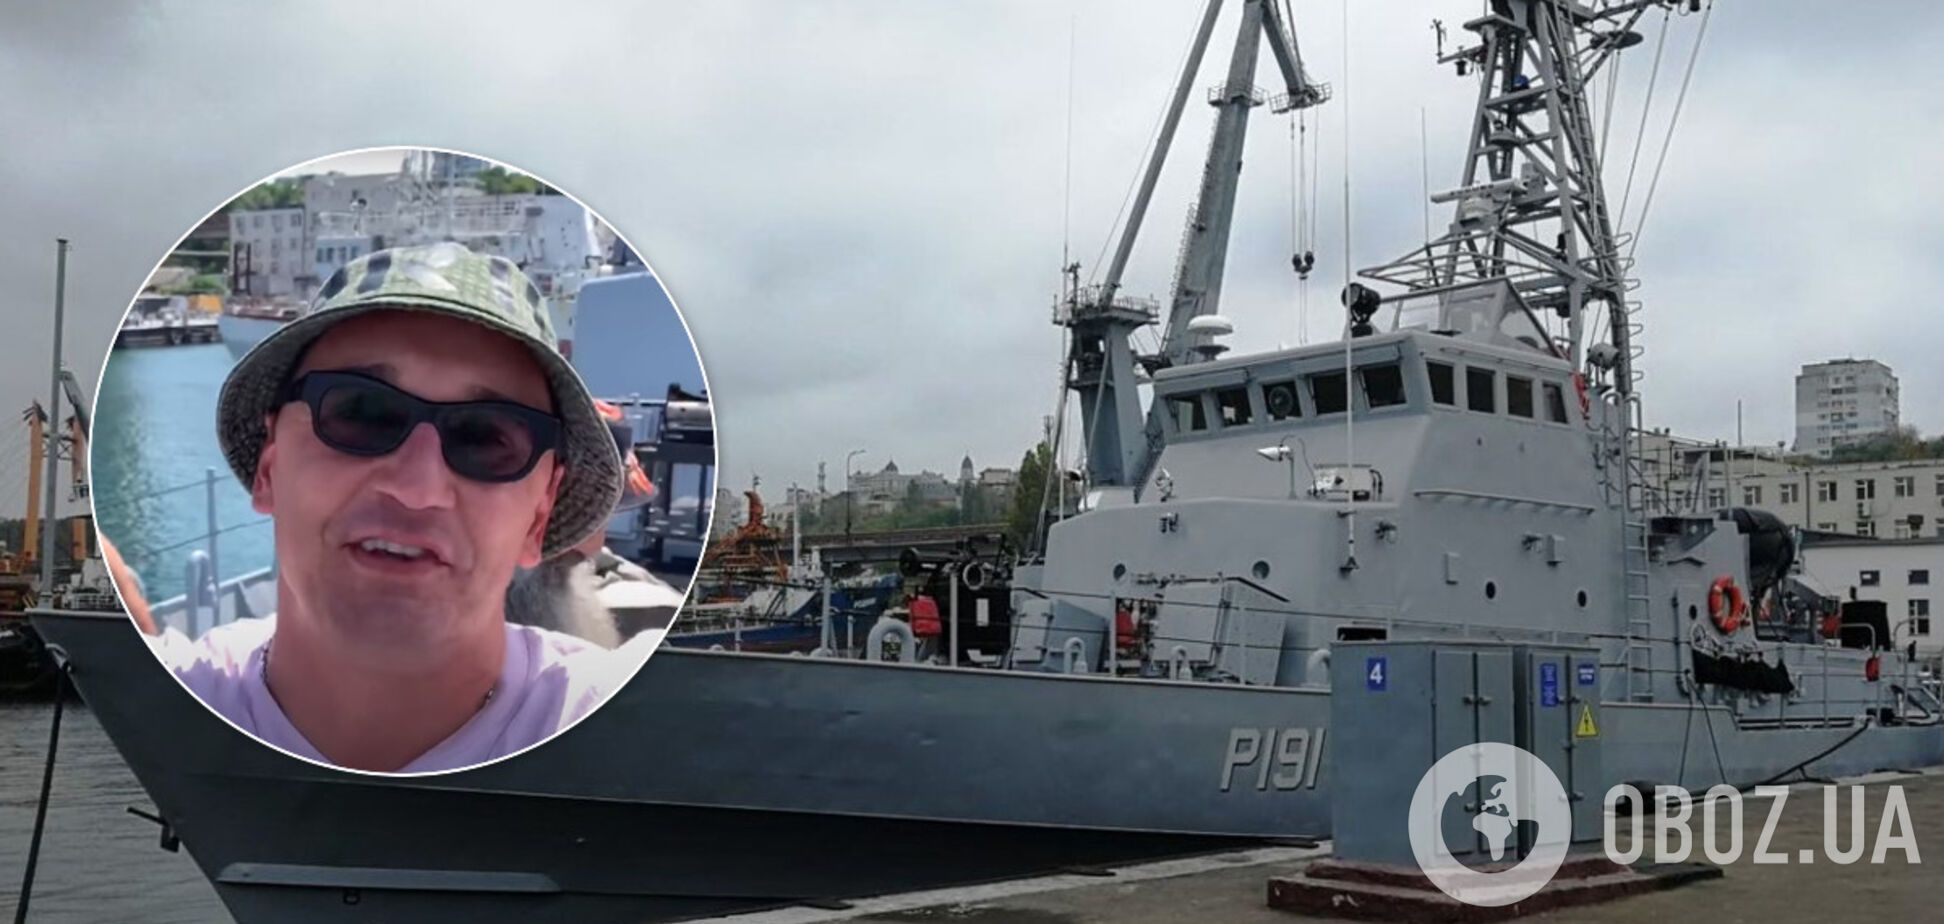 Одеський блогер проник на кораблі ВМС України